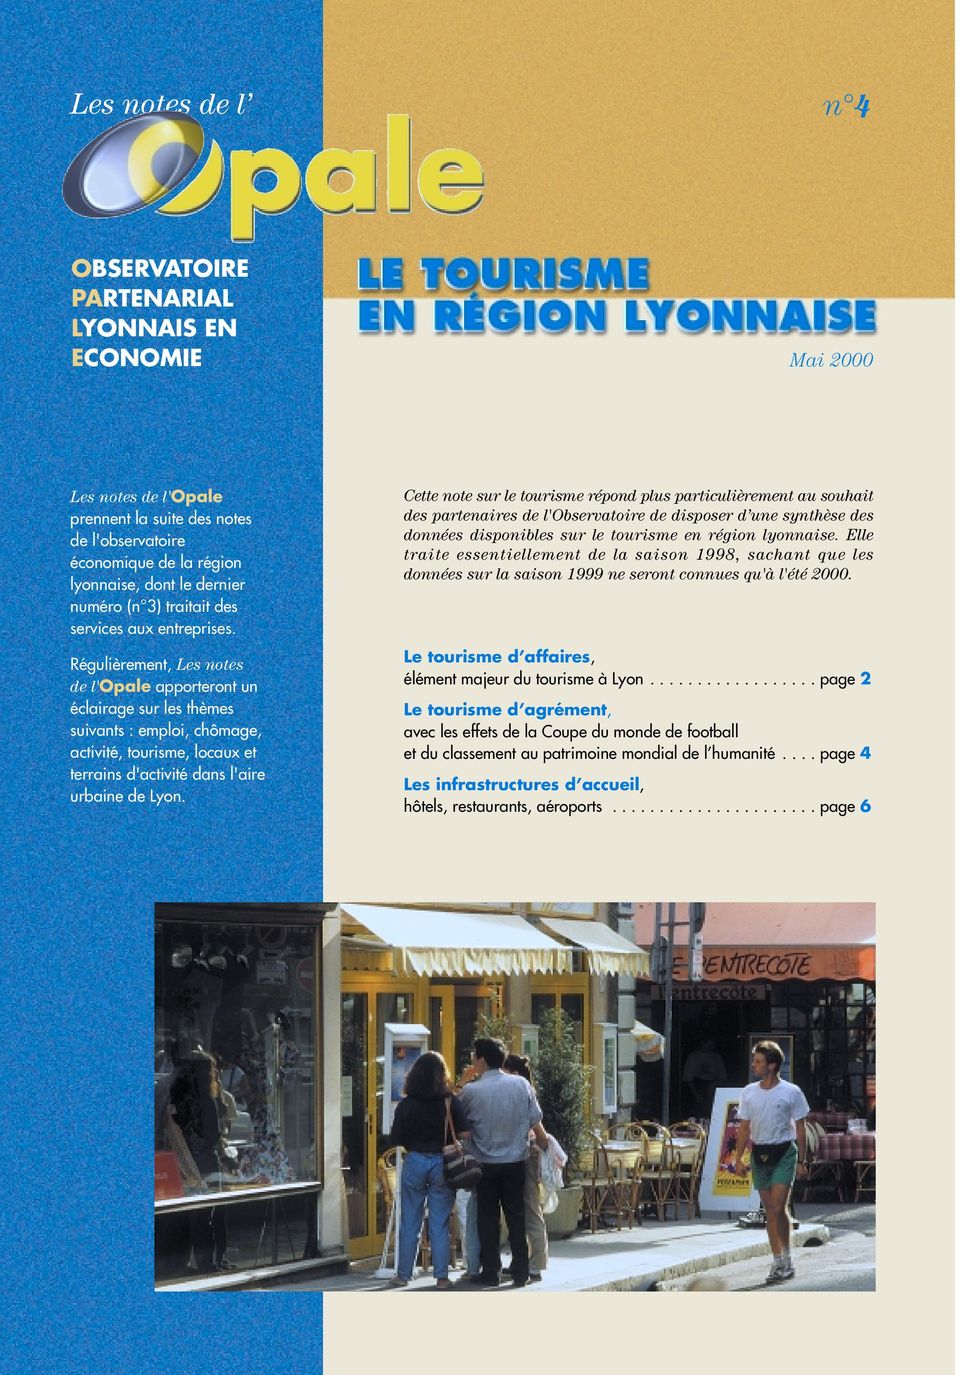 Régulièrement, Les notes de l'opale apporteront un éclairage sur les thèmes suivants : emploi, chômage, activité, tourisme, locaux et terrains d'activité dans l'aire urbaine de Lyon.